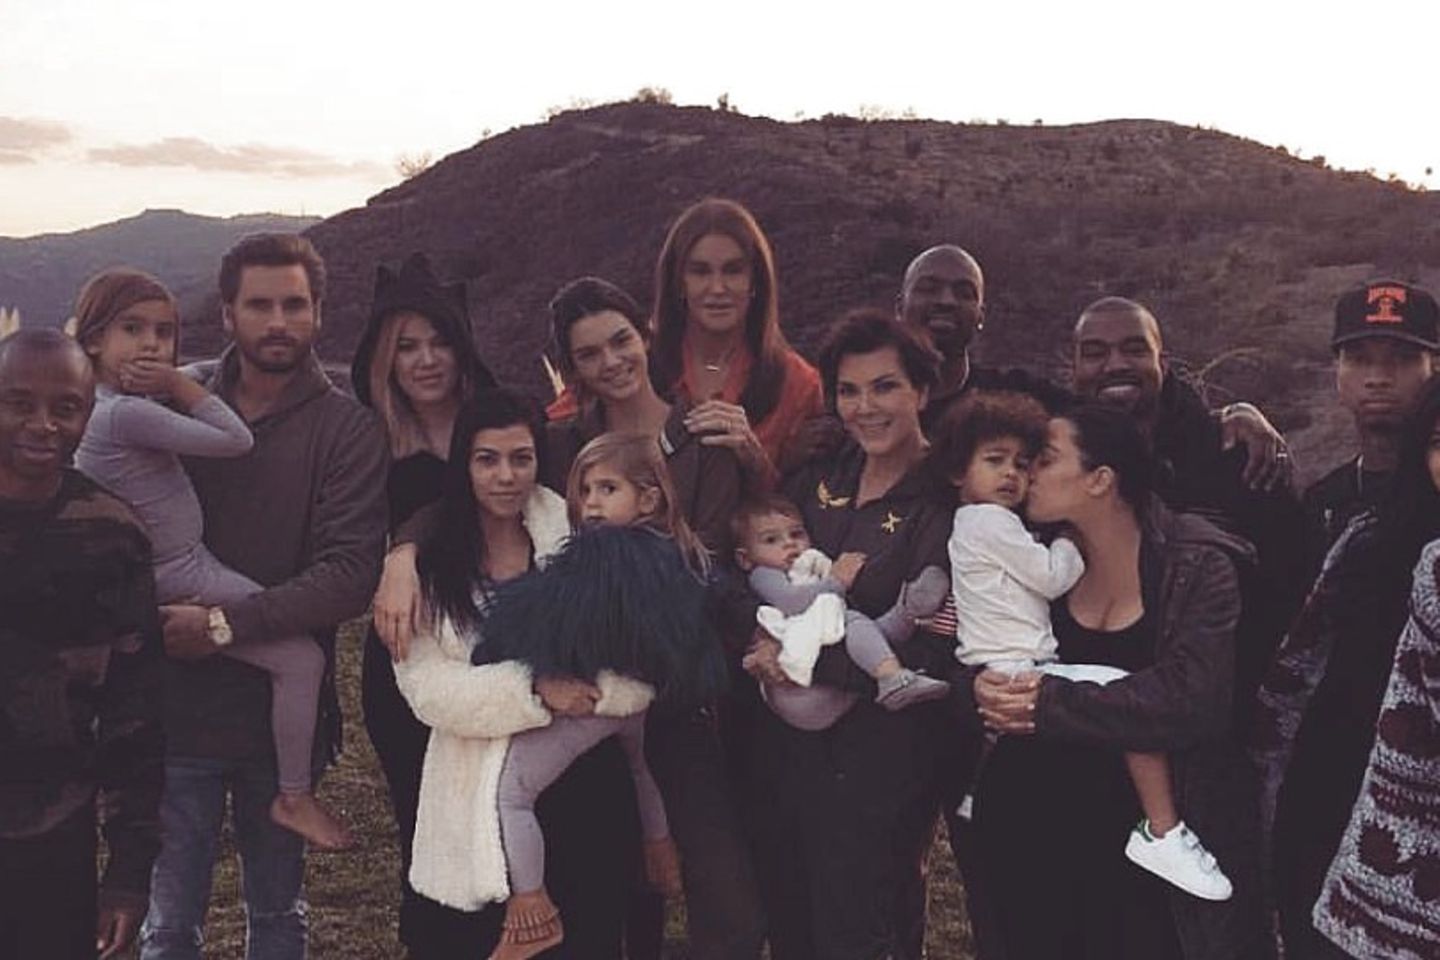 Wimmelbild in den Hügeln von Los Angeles mit dem Kardashian-Jenner-Clan.